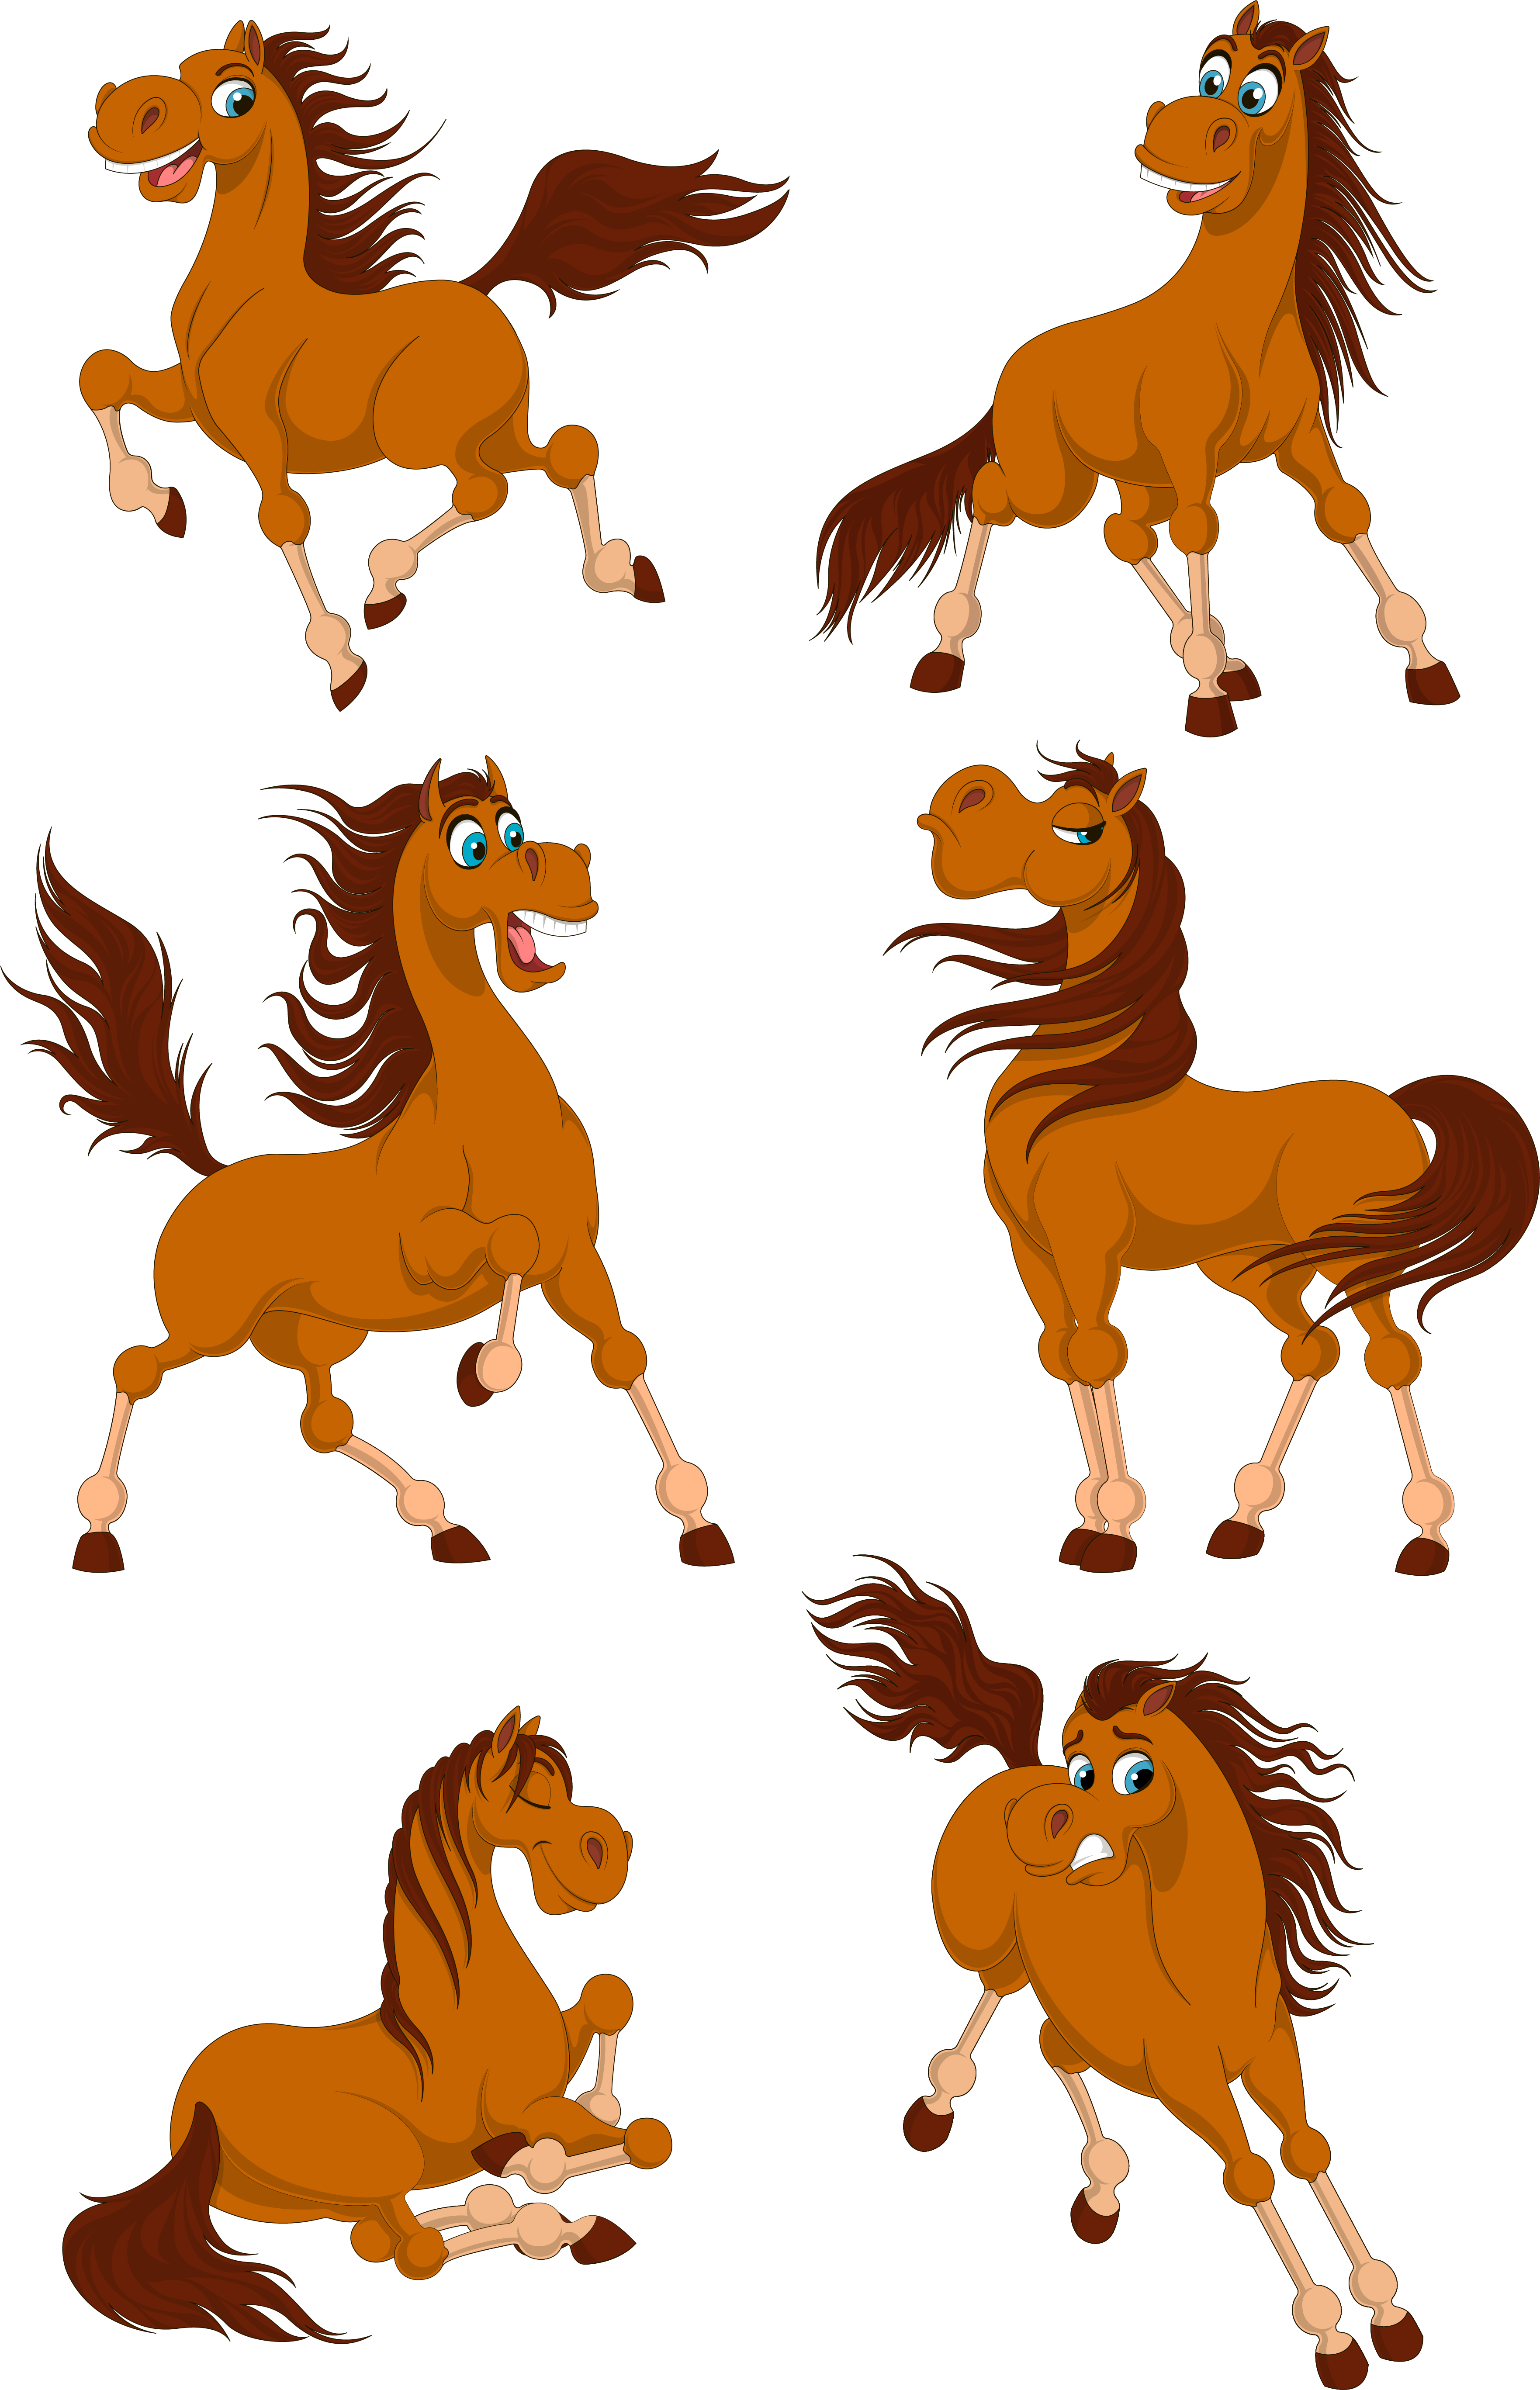 Set of horses